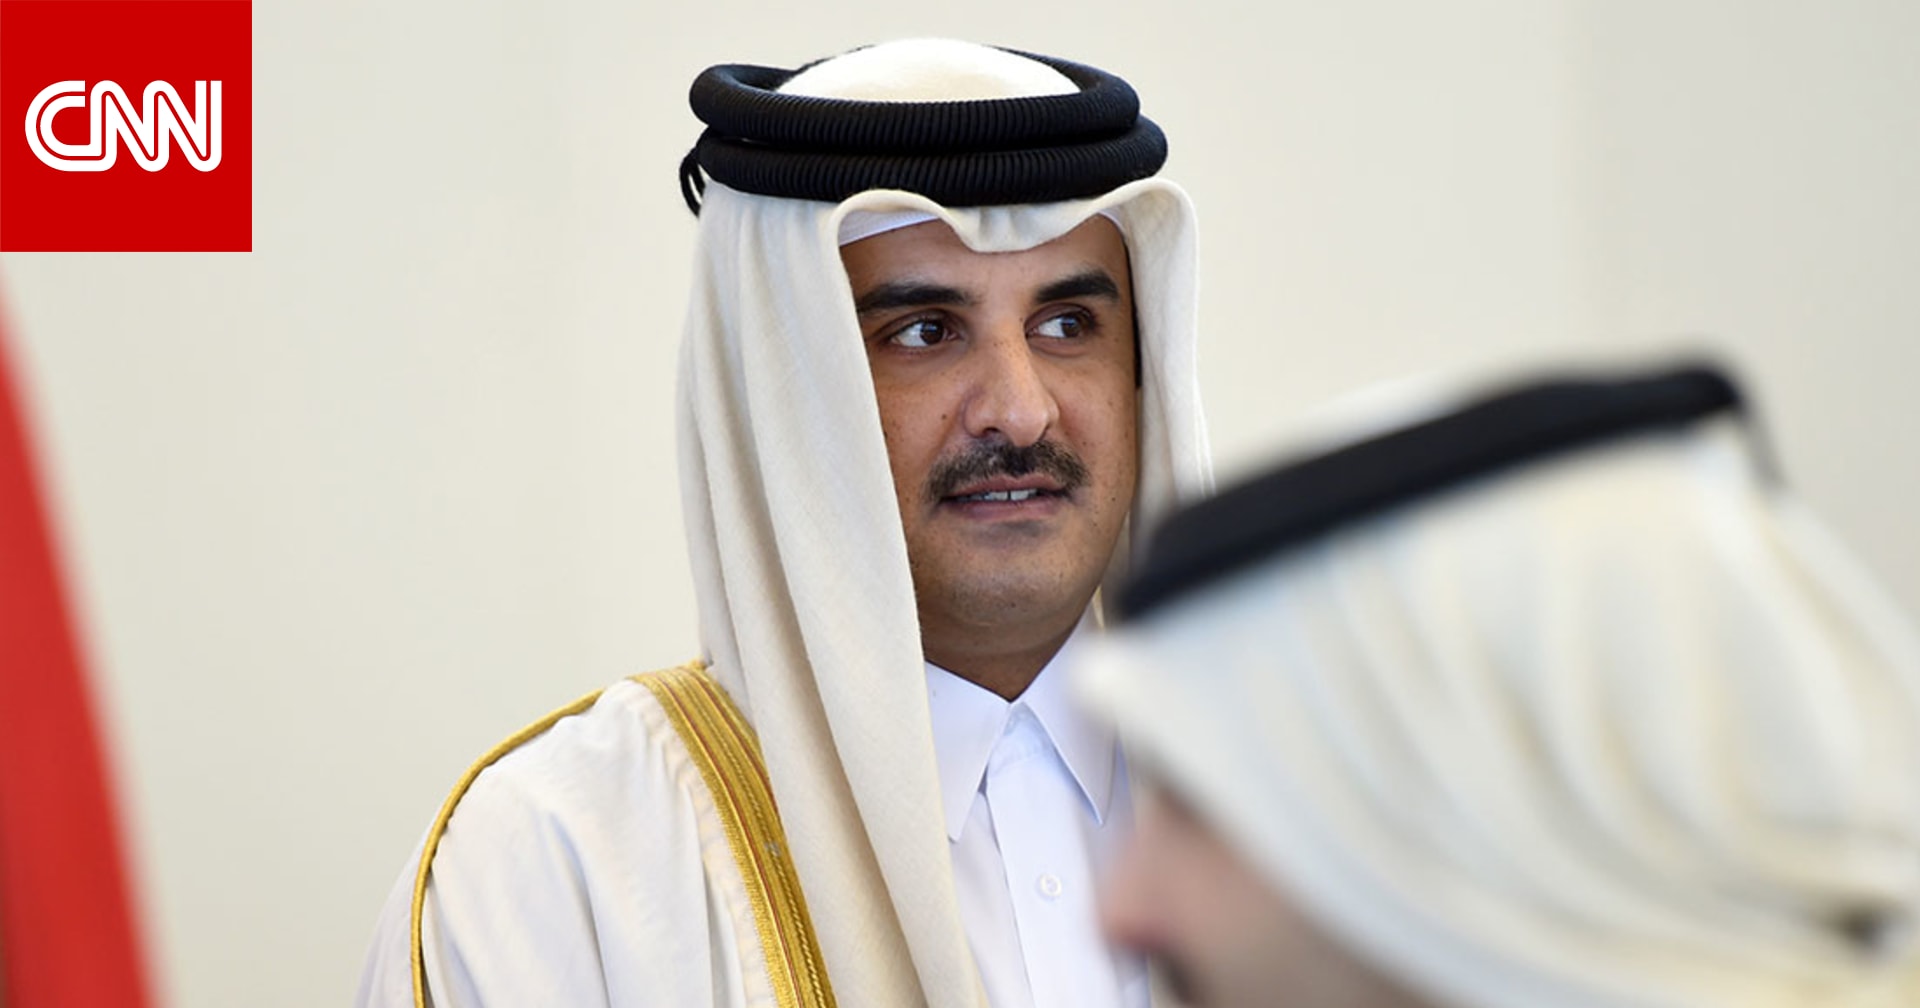 أمير قطر يصادق على قانون لمكافحة الإرهاب وغسل الأموال - CNN Arabic